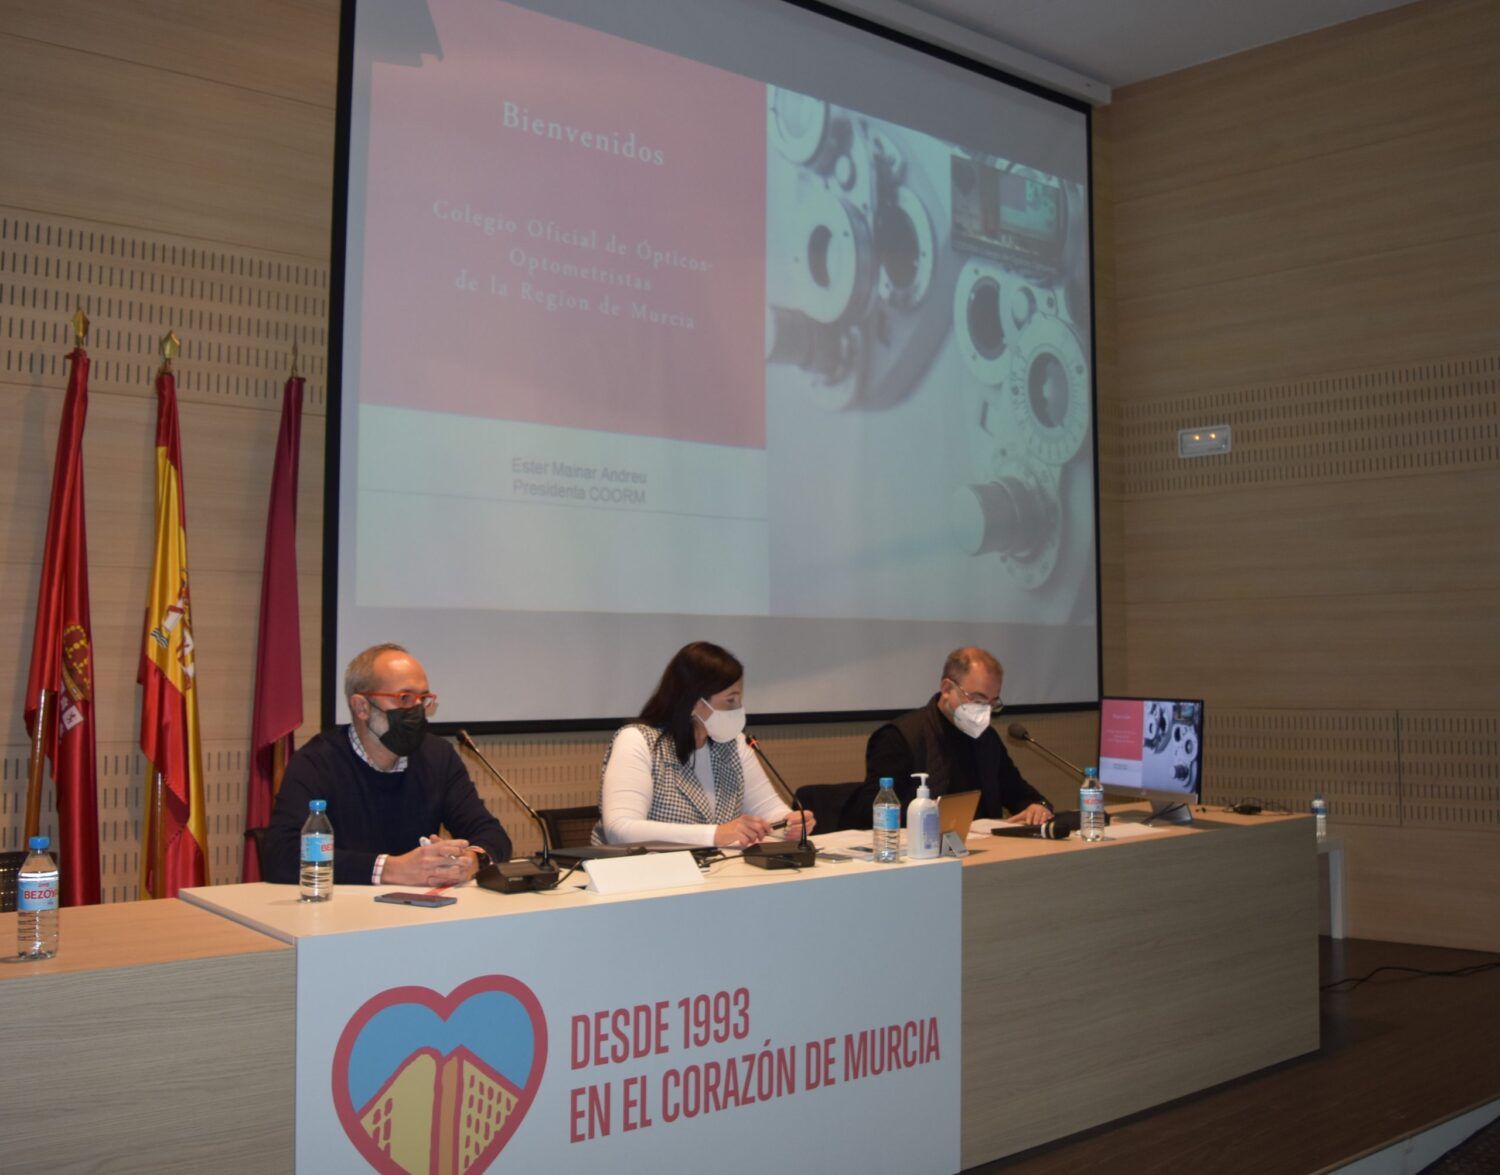 El Colegio Oficial de Ópticos pide al Servicio Murciano de active una bolsa de los ópticos-optometristas • COORM